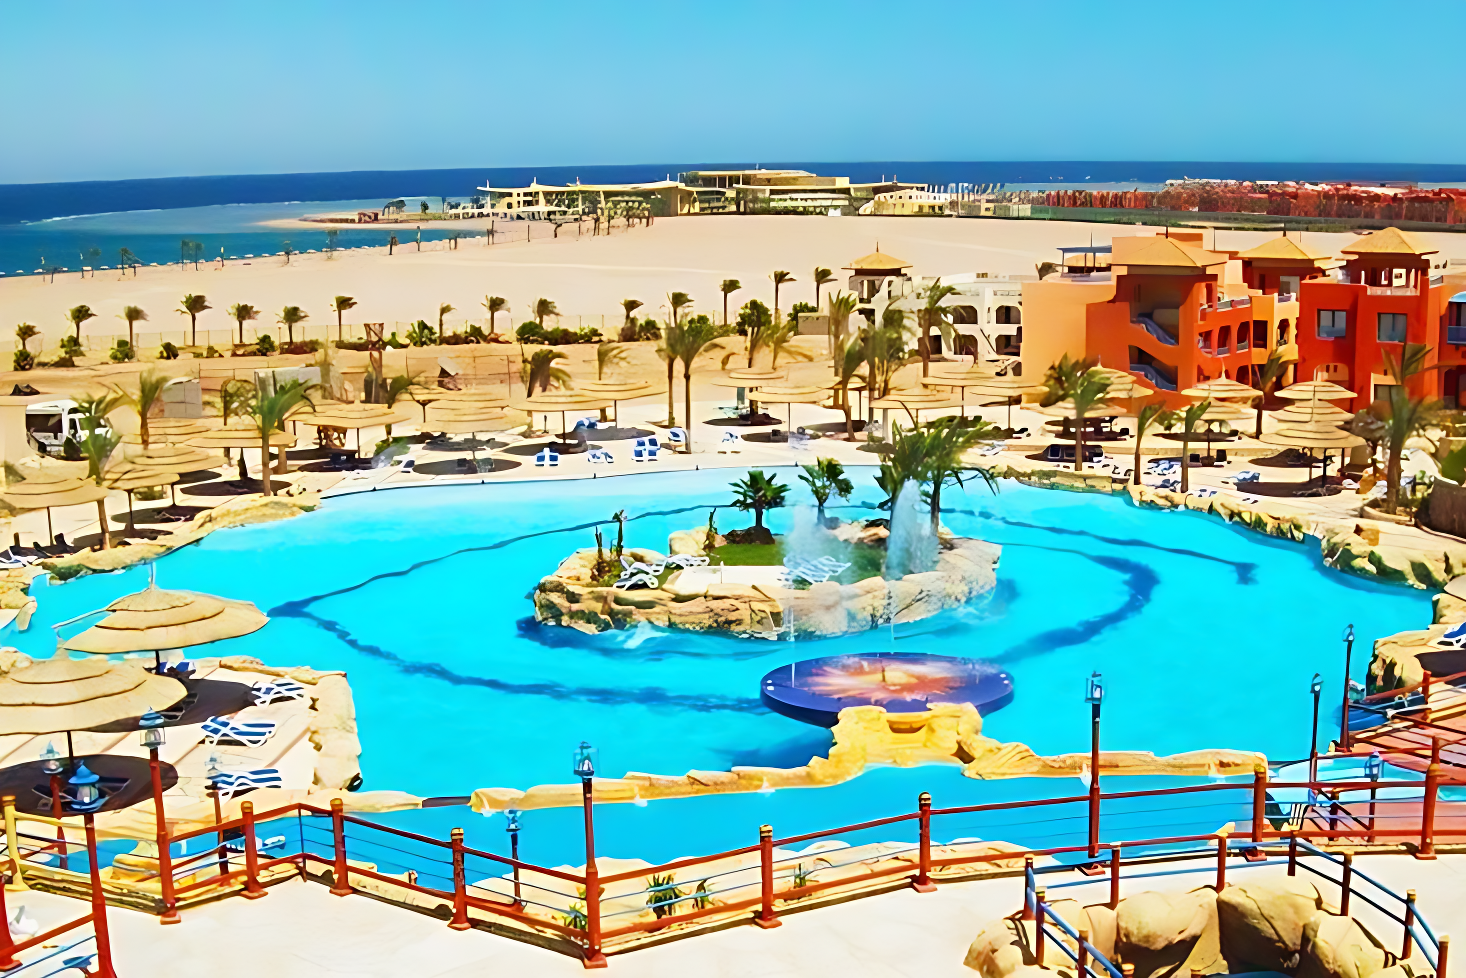 Wycieczka od jutra. Egipt, Sharm el Sheikh - 4*, zjeżdżalnie, plaża, All Inclusive. Od 1 155 zł/os.